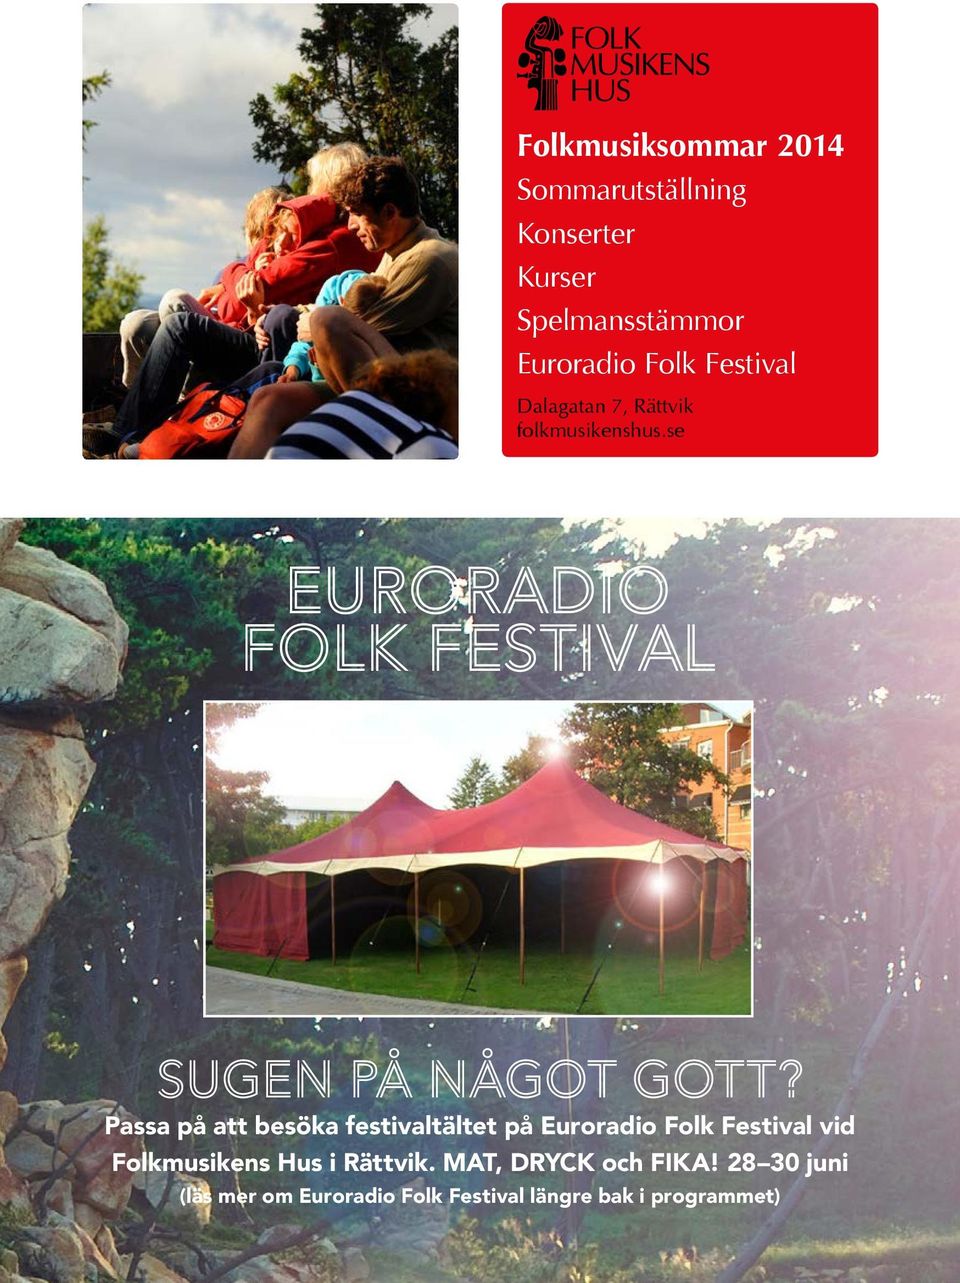 Passa på att besöka festivaltältet på Euroradio Folk Festival vid Folkmusikens Hus i Rättvik.